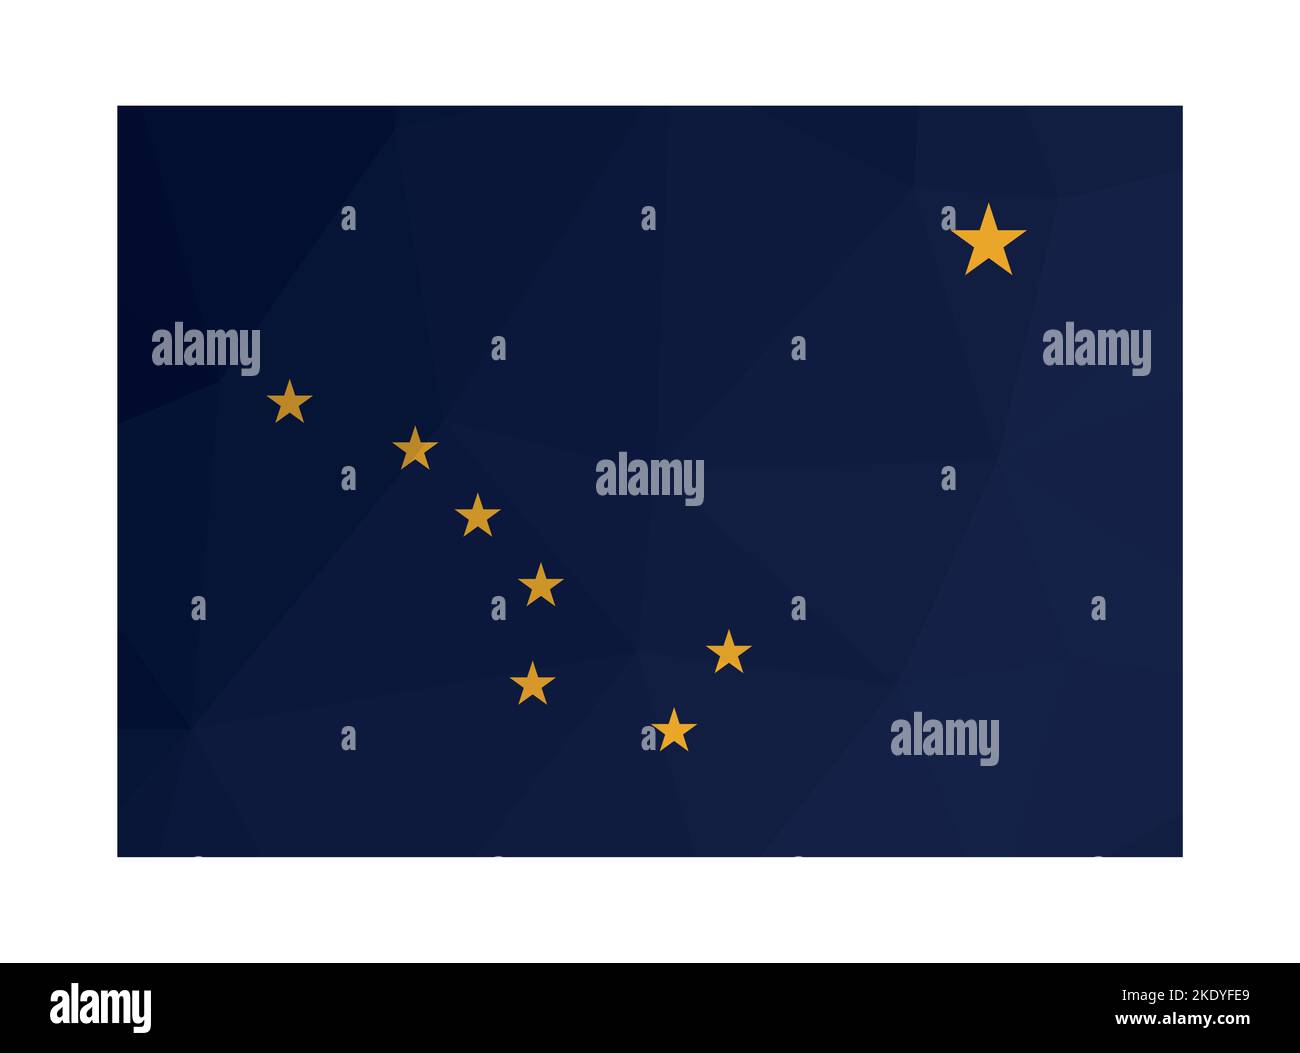 Vektorillustration. Offizielles Fähnrich von Alaska (US-Bundesstaat). Nationalflagge mit gelben Sternen auf blauem Hintergrund. Kreatives Design im polygonalen Stil Stock Vektor